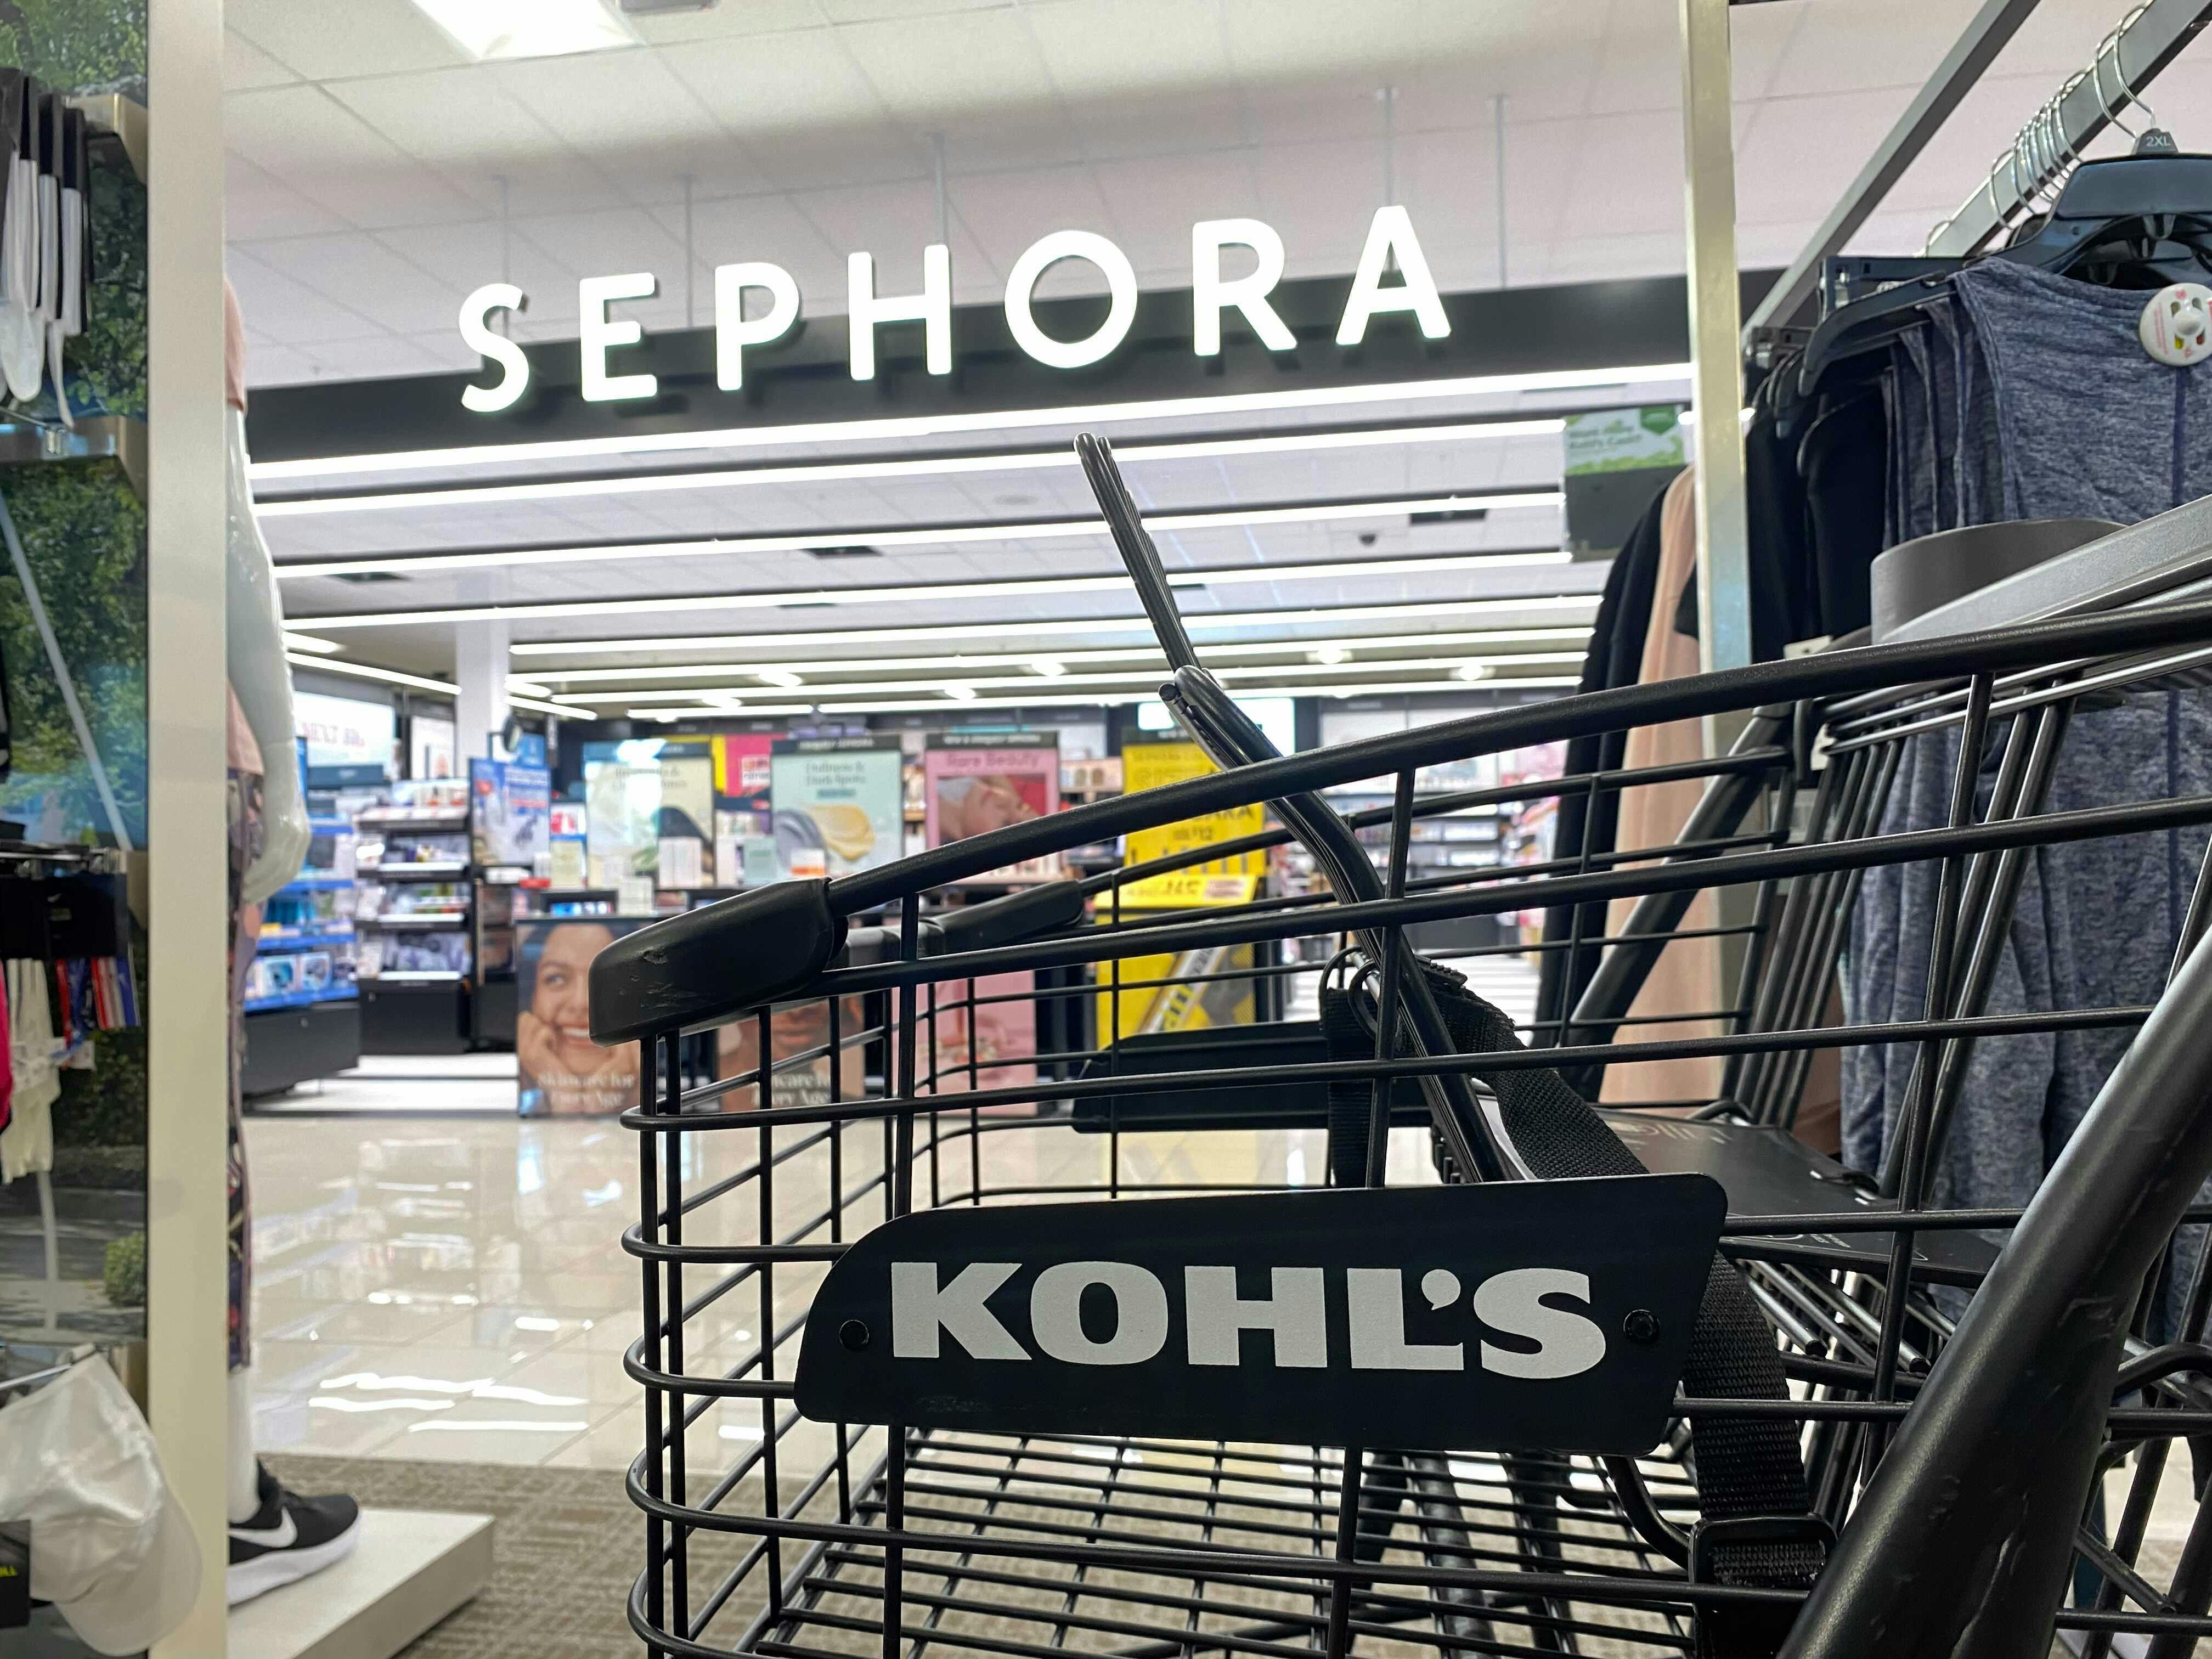 kohls cart in front of sephora sign in kohls